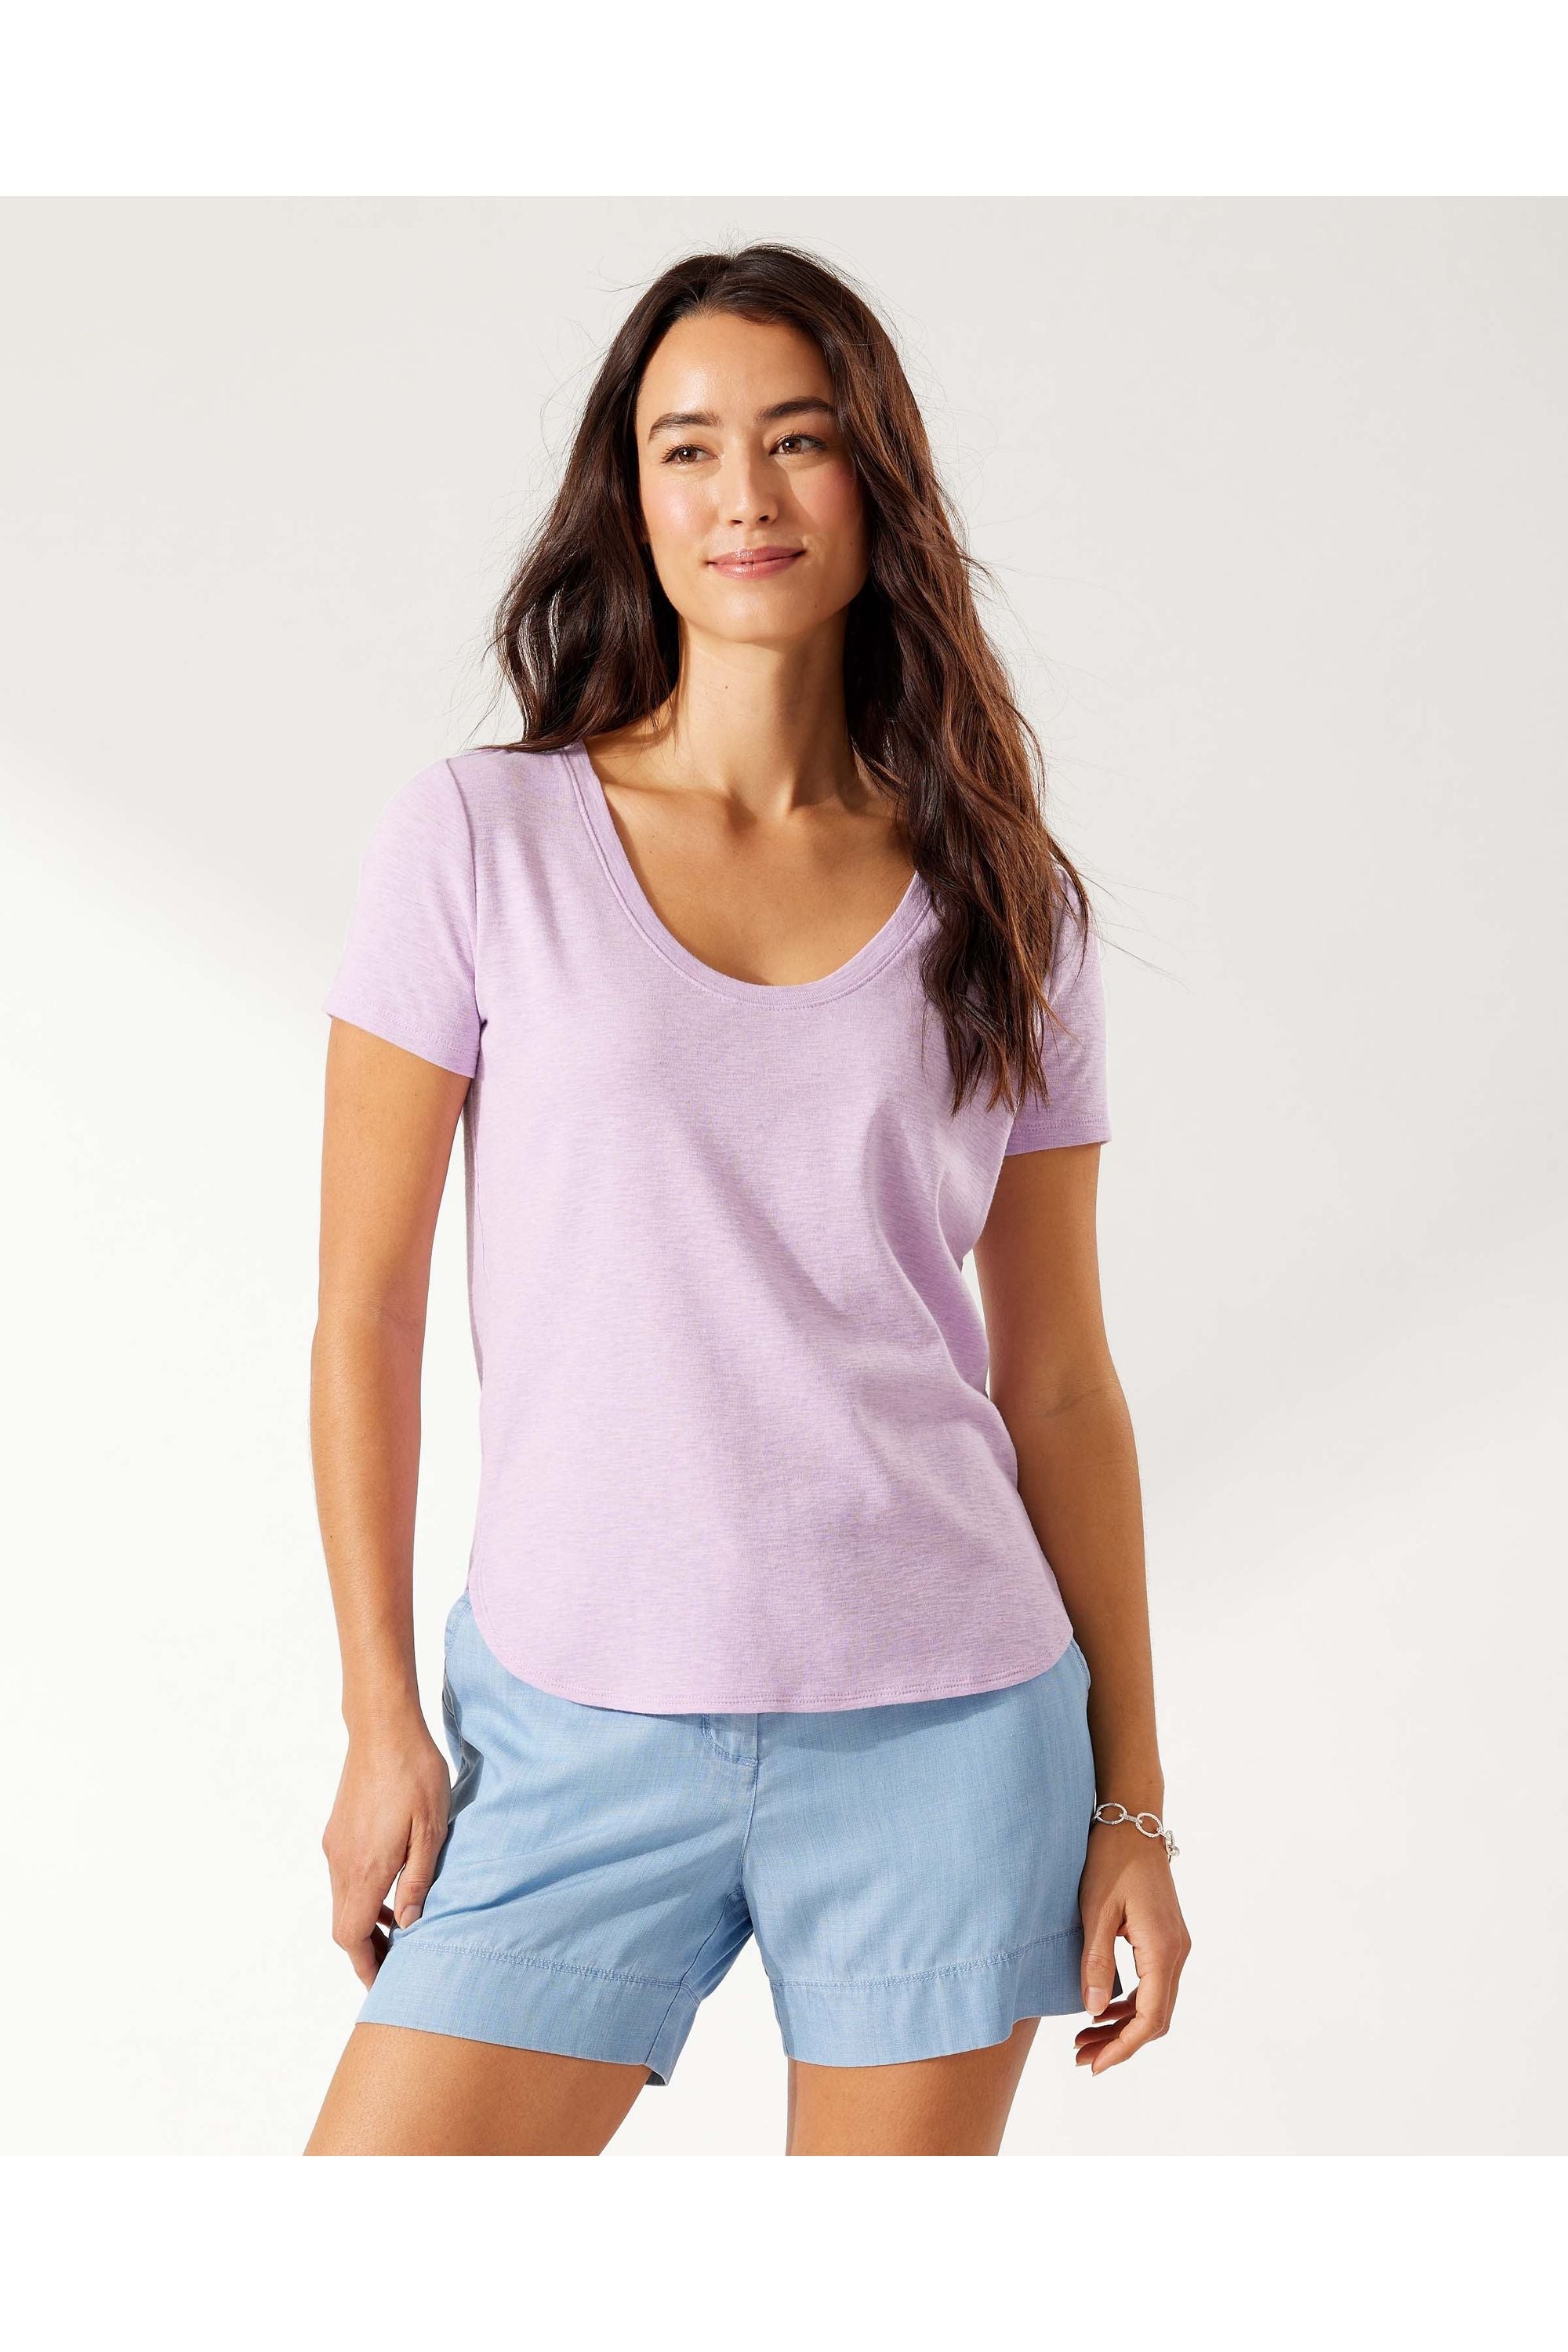 Tommy Bahama Ashby Short-Sleeve T-Shirt - Style SW221034, lavendula, front